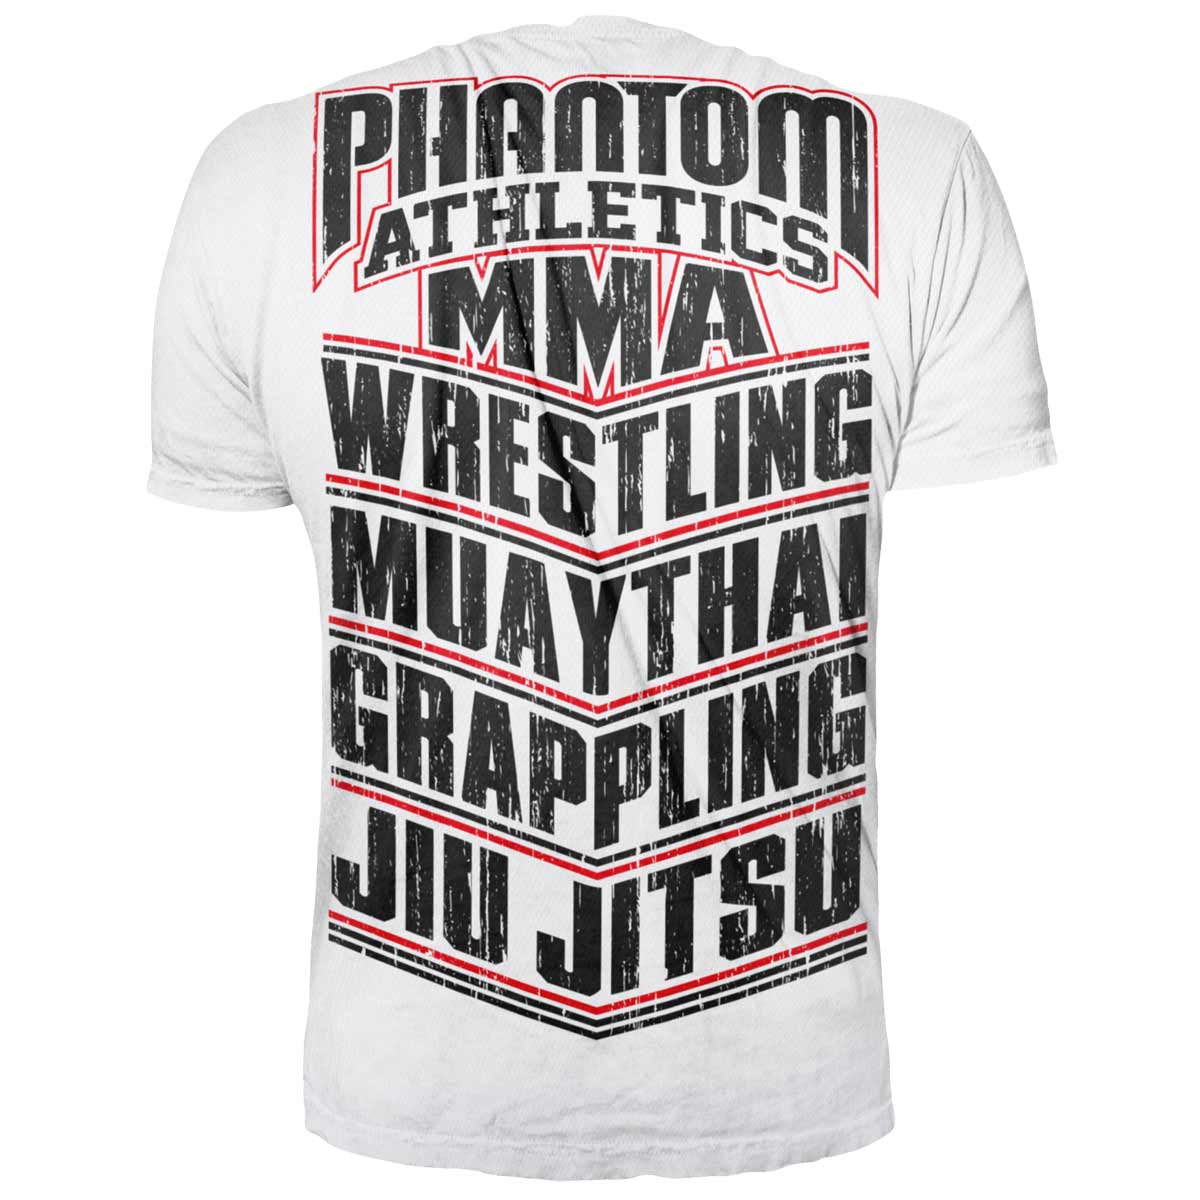 T-shirt Phantom pour tous les artistes martiaux. Avec lettrage MMA, WRESTLING, MUAY THAI, GRAPPLING, JIU JITSU. Idéal pour votre entraînement au combat.